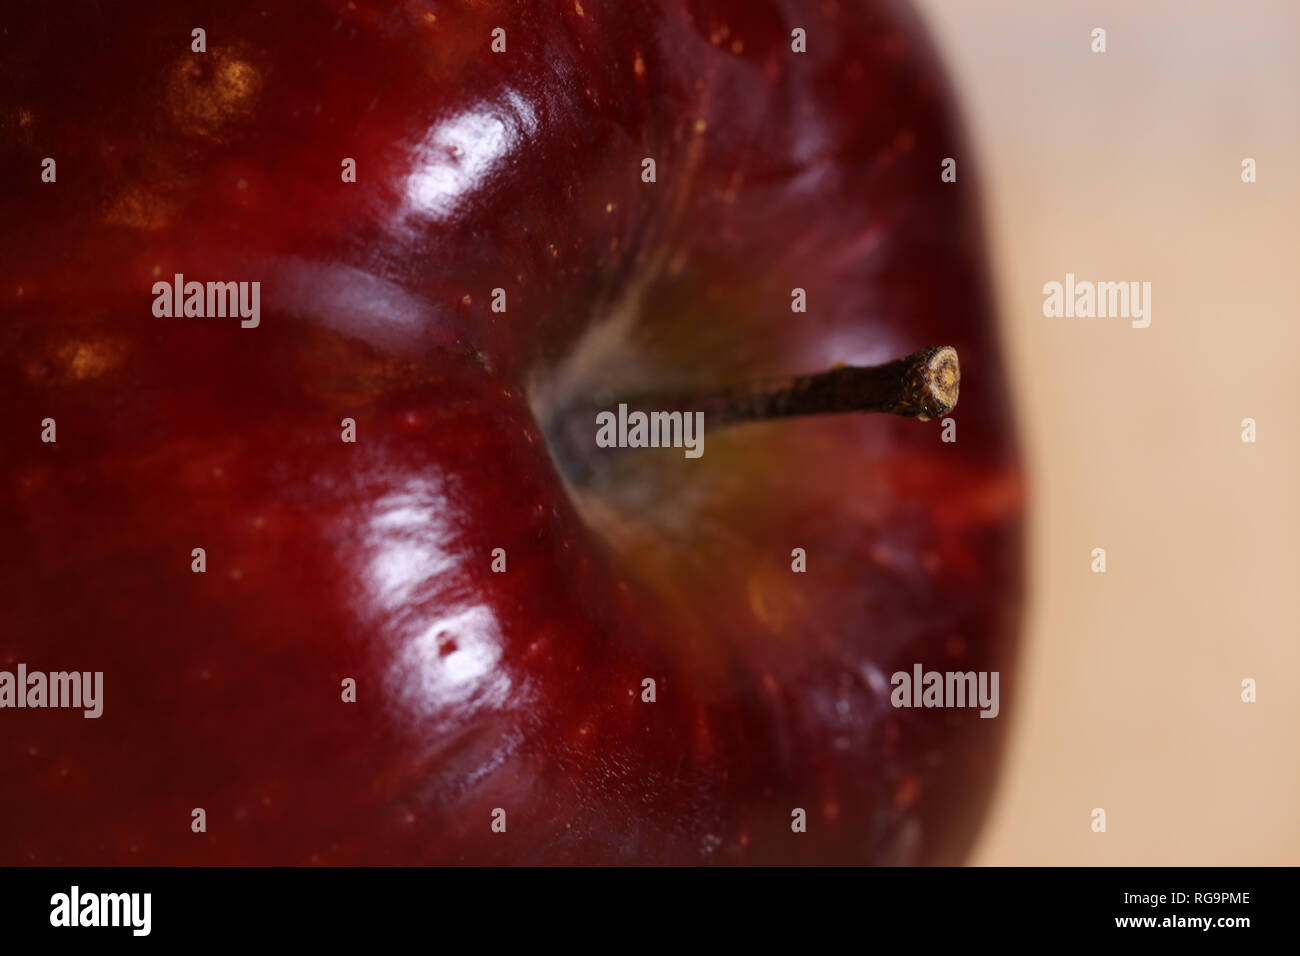 Foto macro di una mela Red Delicious. Bella closeup mostra i dettagli di questo frutto. Immagine a colori. Foto Stock